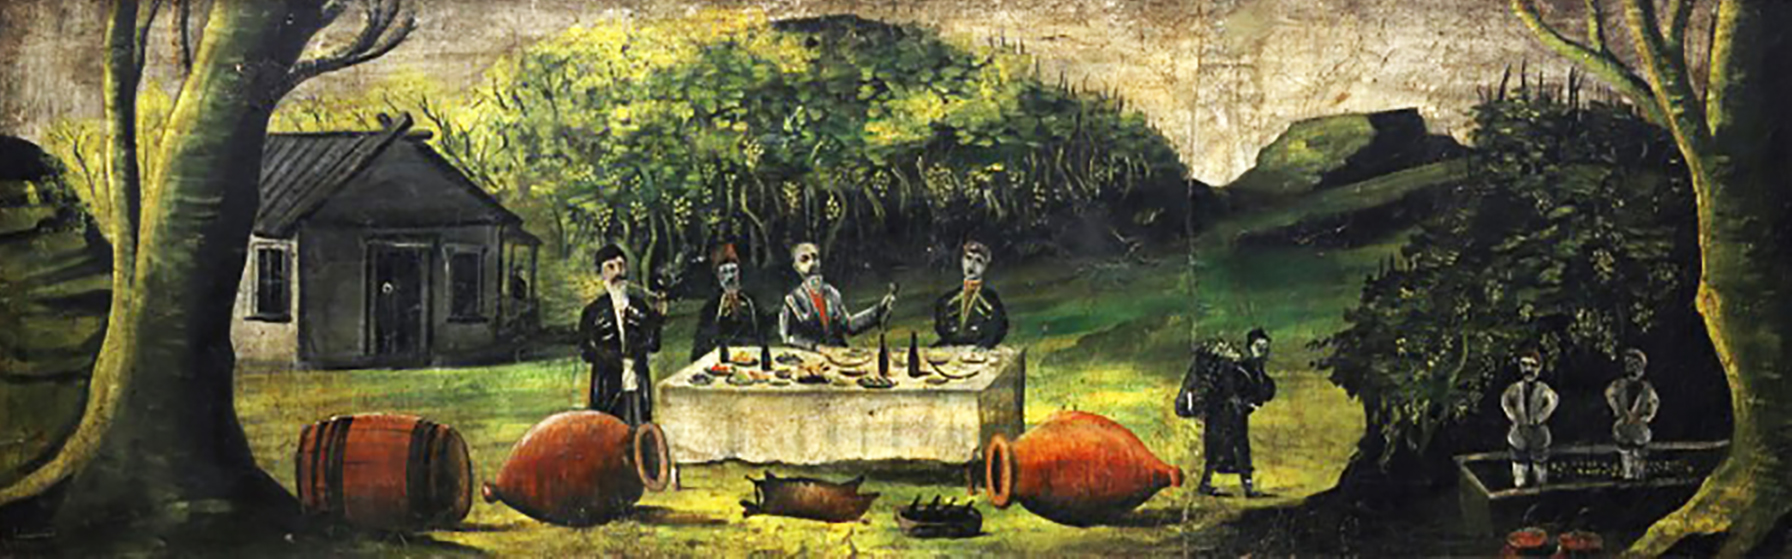 Пиросмани Грузия квеври вино обзор пейзажи природы Альберт Сафиуллин